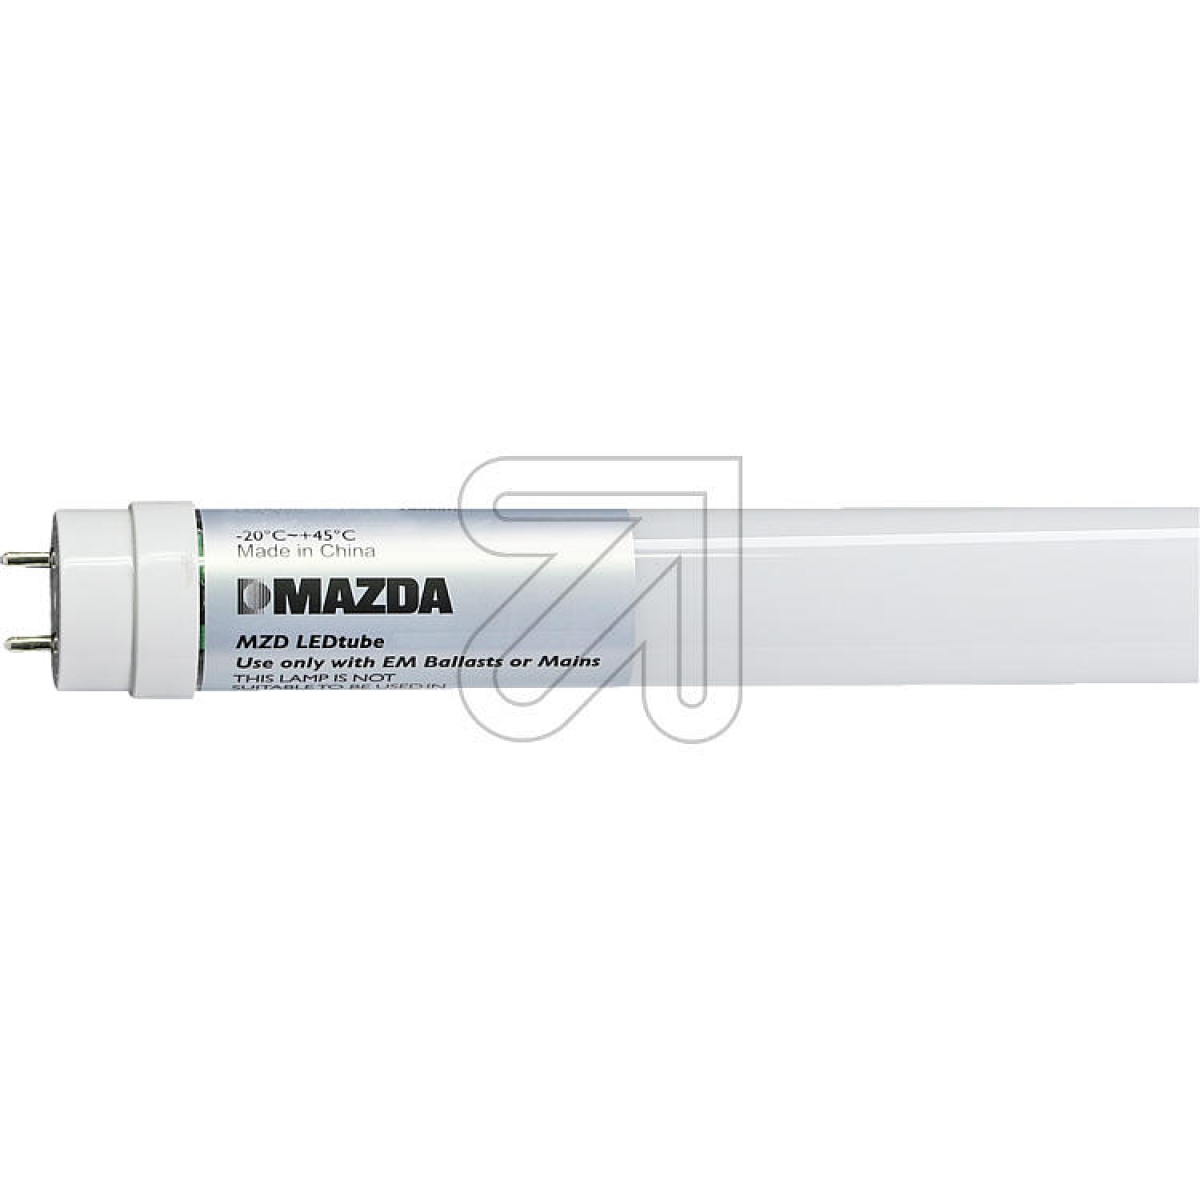 MAZDA LightingMAZDA LEDtube T8 600mm 8W 865 54330700-Preis für 20 StückArtikel-Nr: 523005